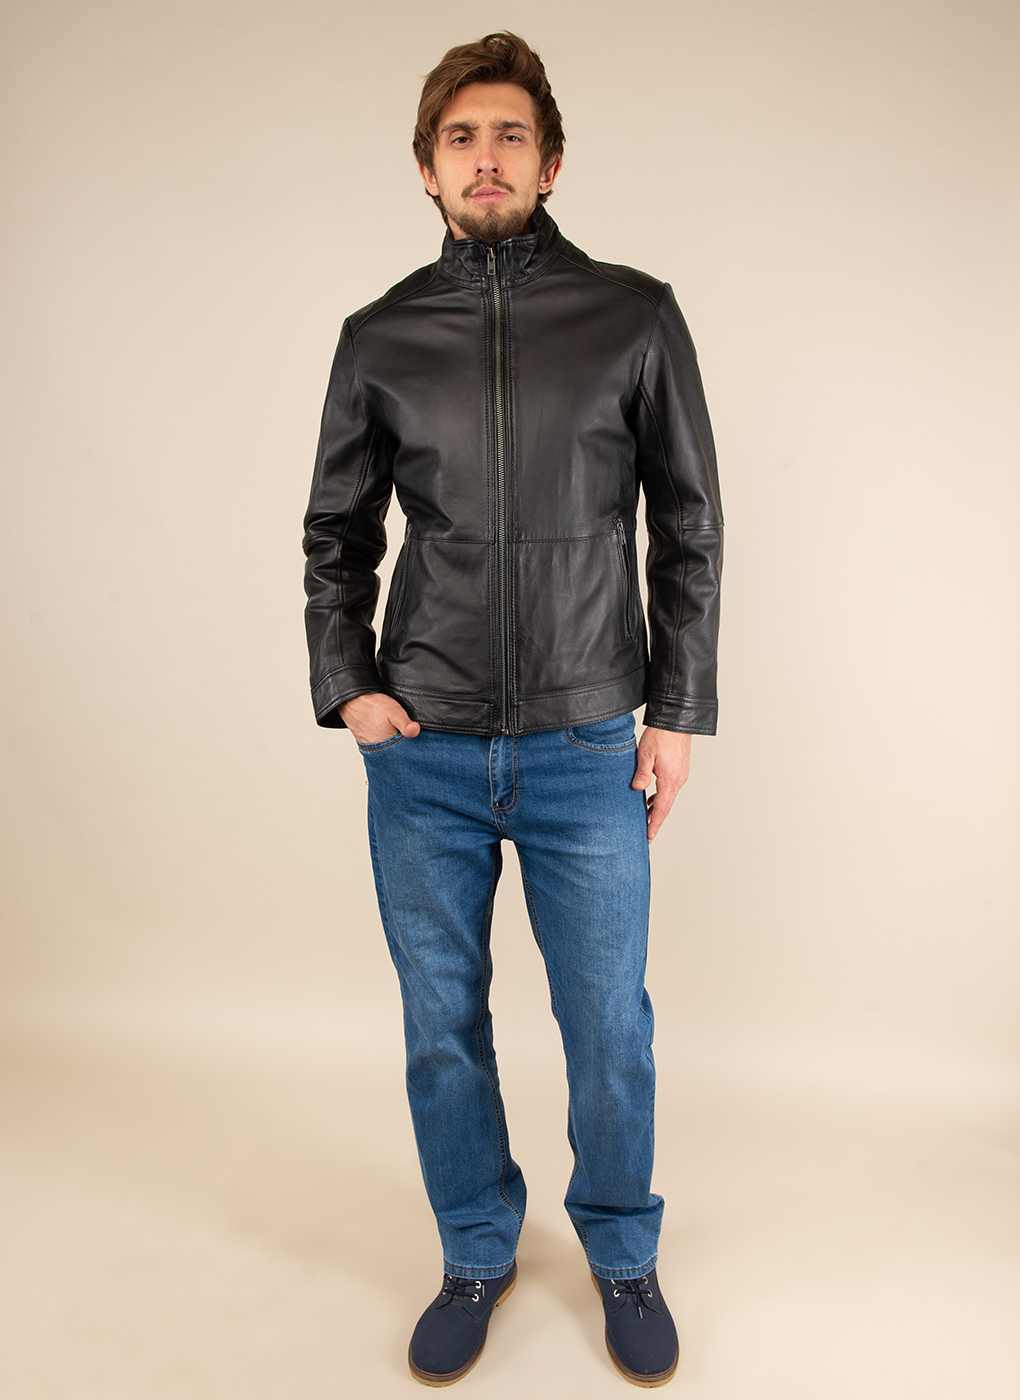 Кожаная куртка мужская Каляев 51795 черная 50 RU